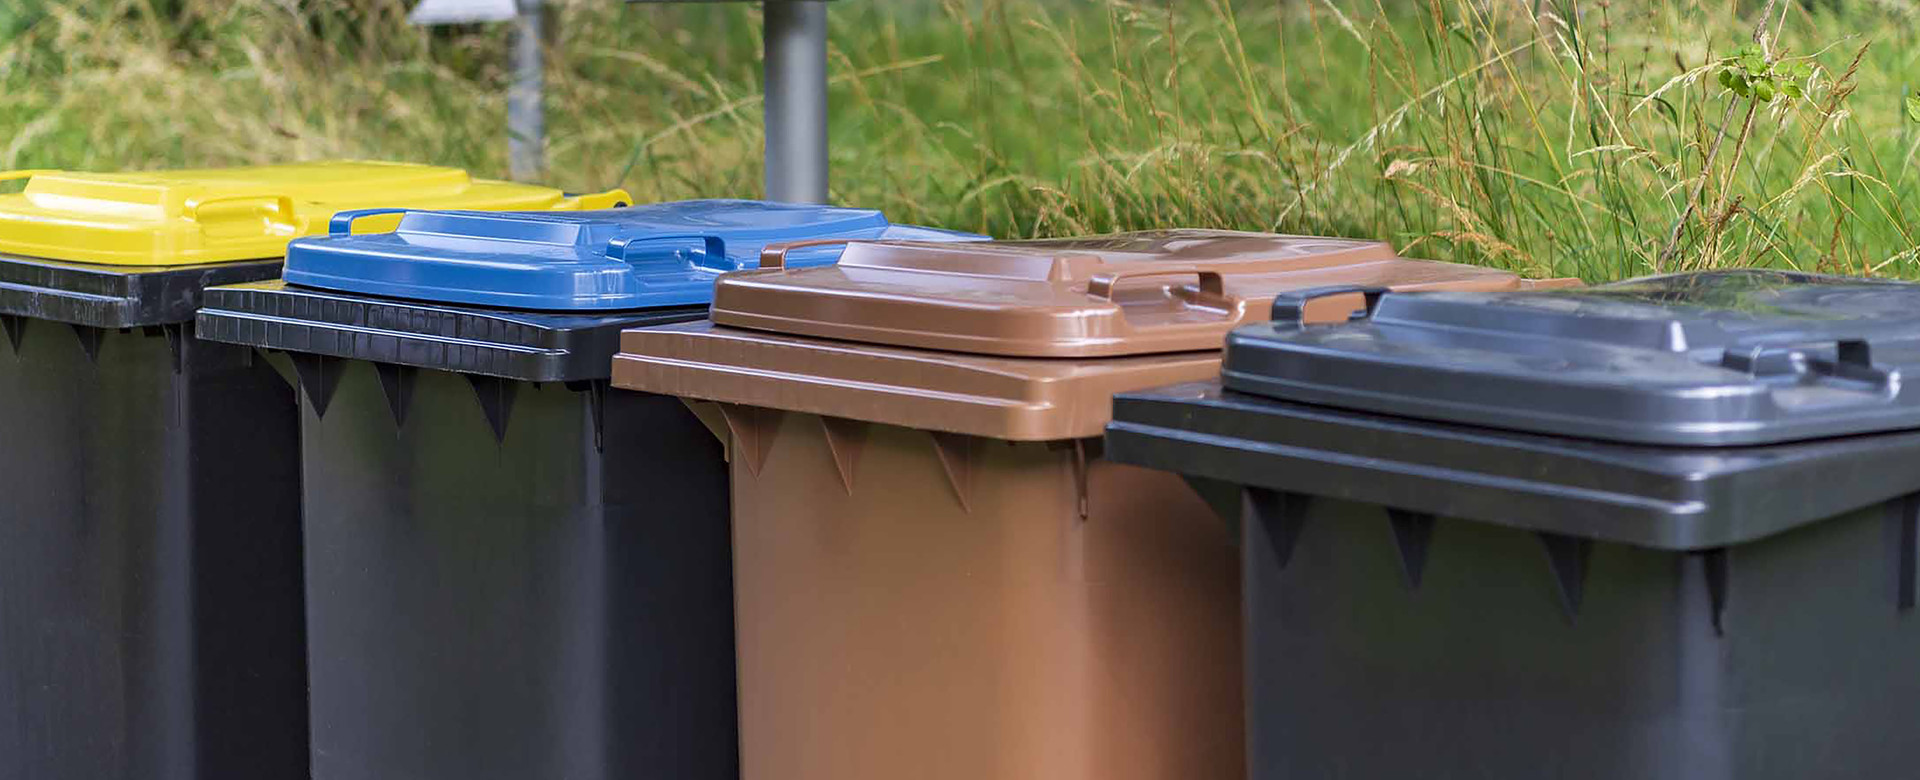 Darstellung der vier Abfallbehälter für Restmüll, Biomüll, Altpapier und Leichtverpackungen